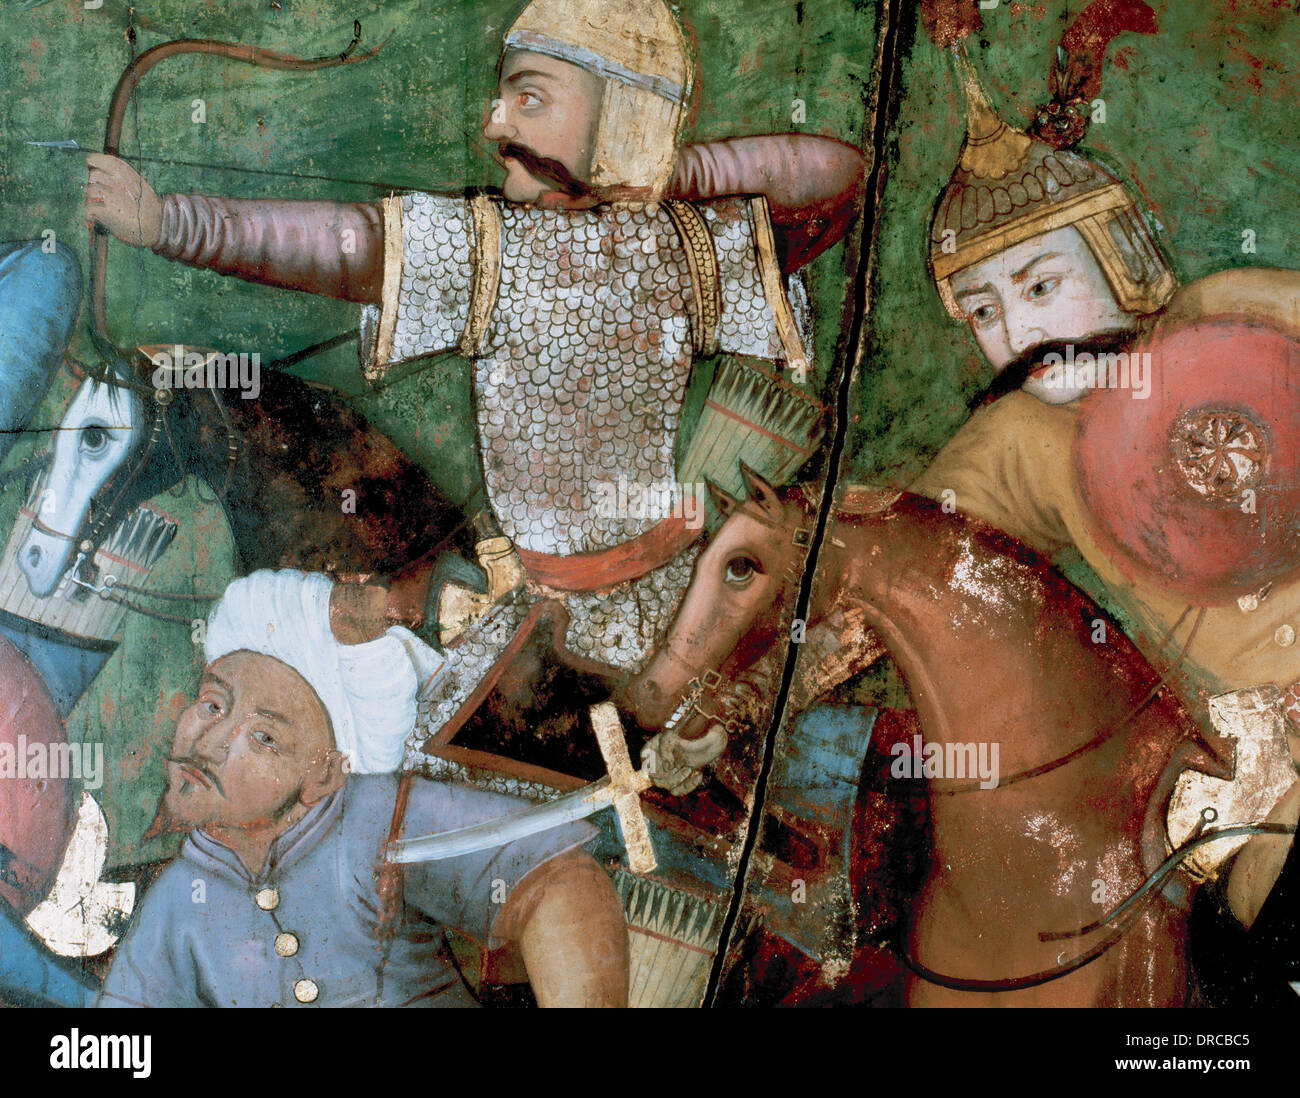 Abbas I le Grand (1571-1629). Shah de la dynastie safavide. Les soldats de cavalerie perse la lutte contre les Turcs. En plein air. Détail. Banque D'Images